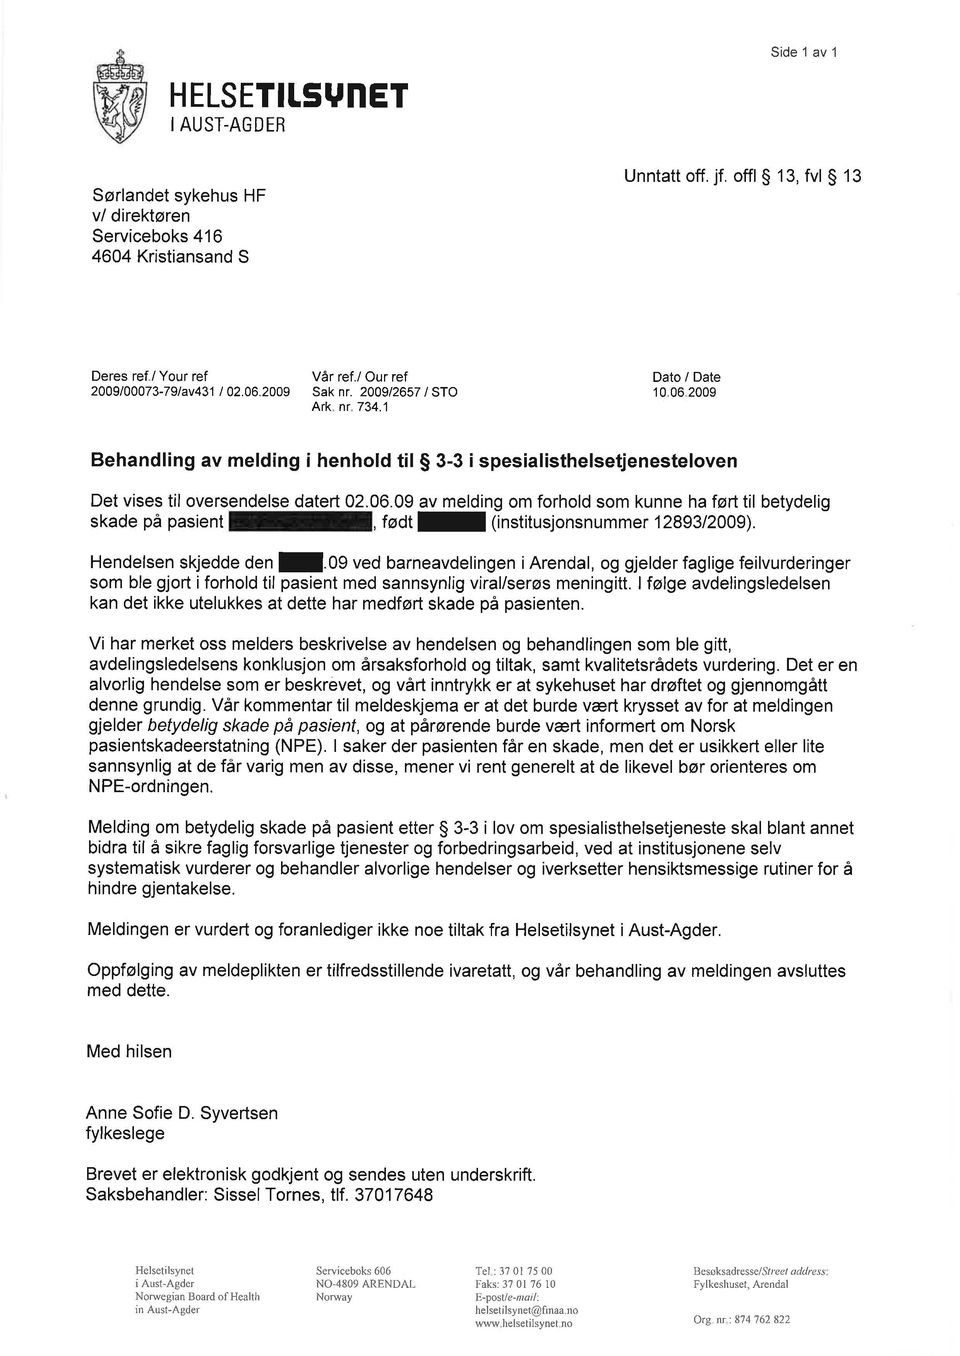 Hendelsen skjedde Oen!.09 ved barneavdelingen i Arendal, og gjelder faglige feilvurderinger som ble gjort i forhold til pasient med sannsynlig viral/serøs meningitt.